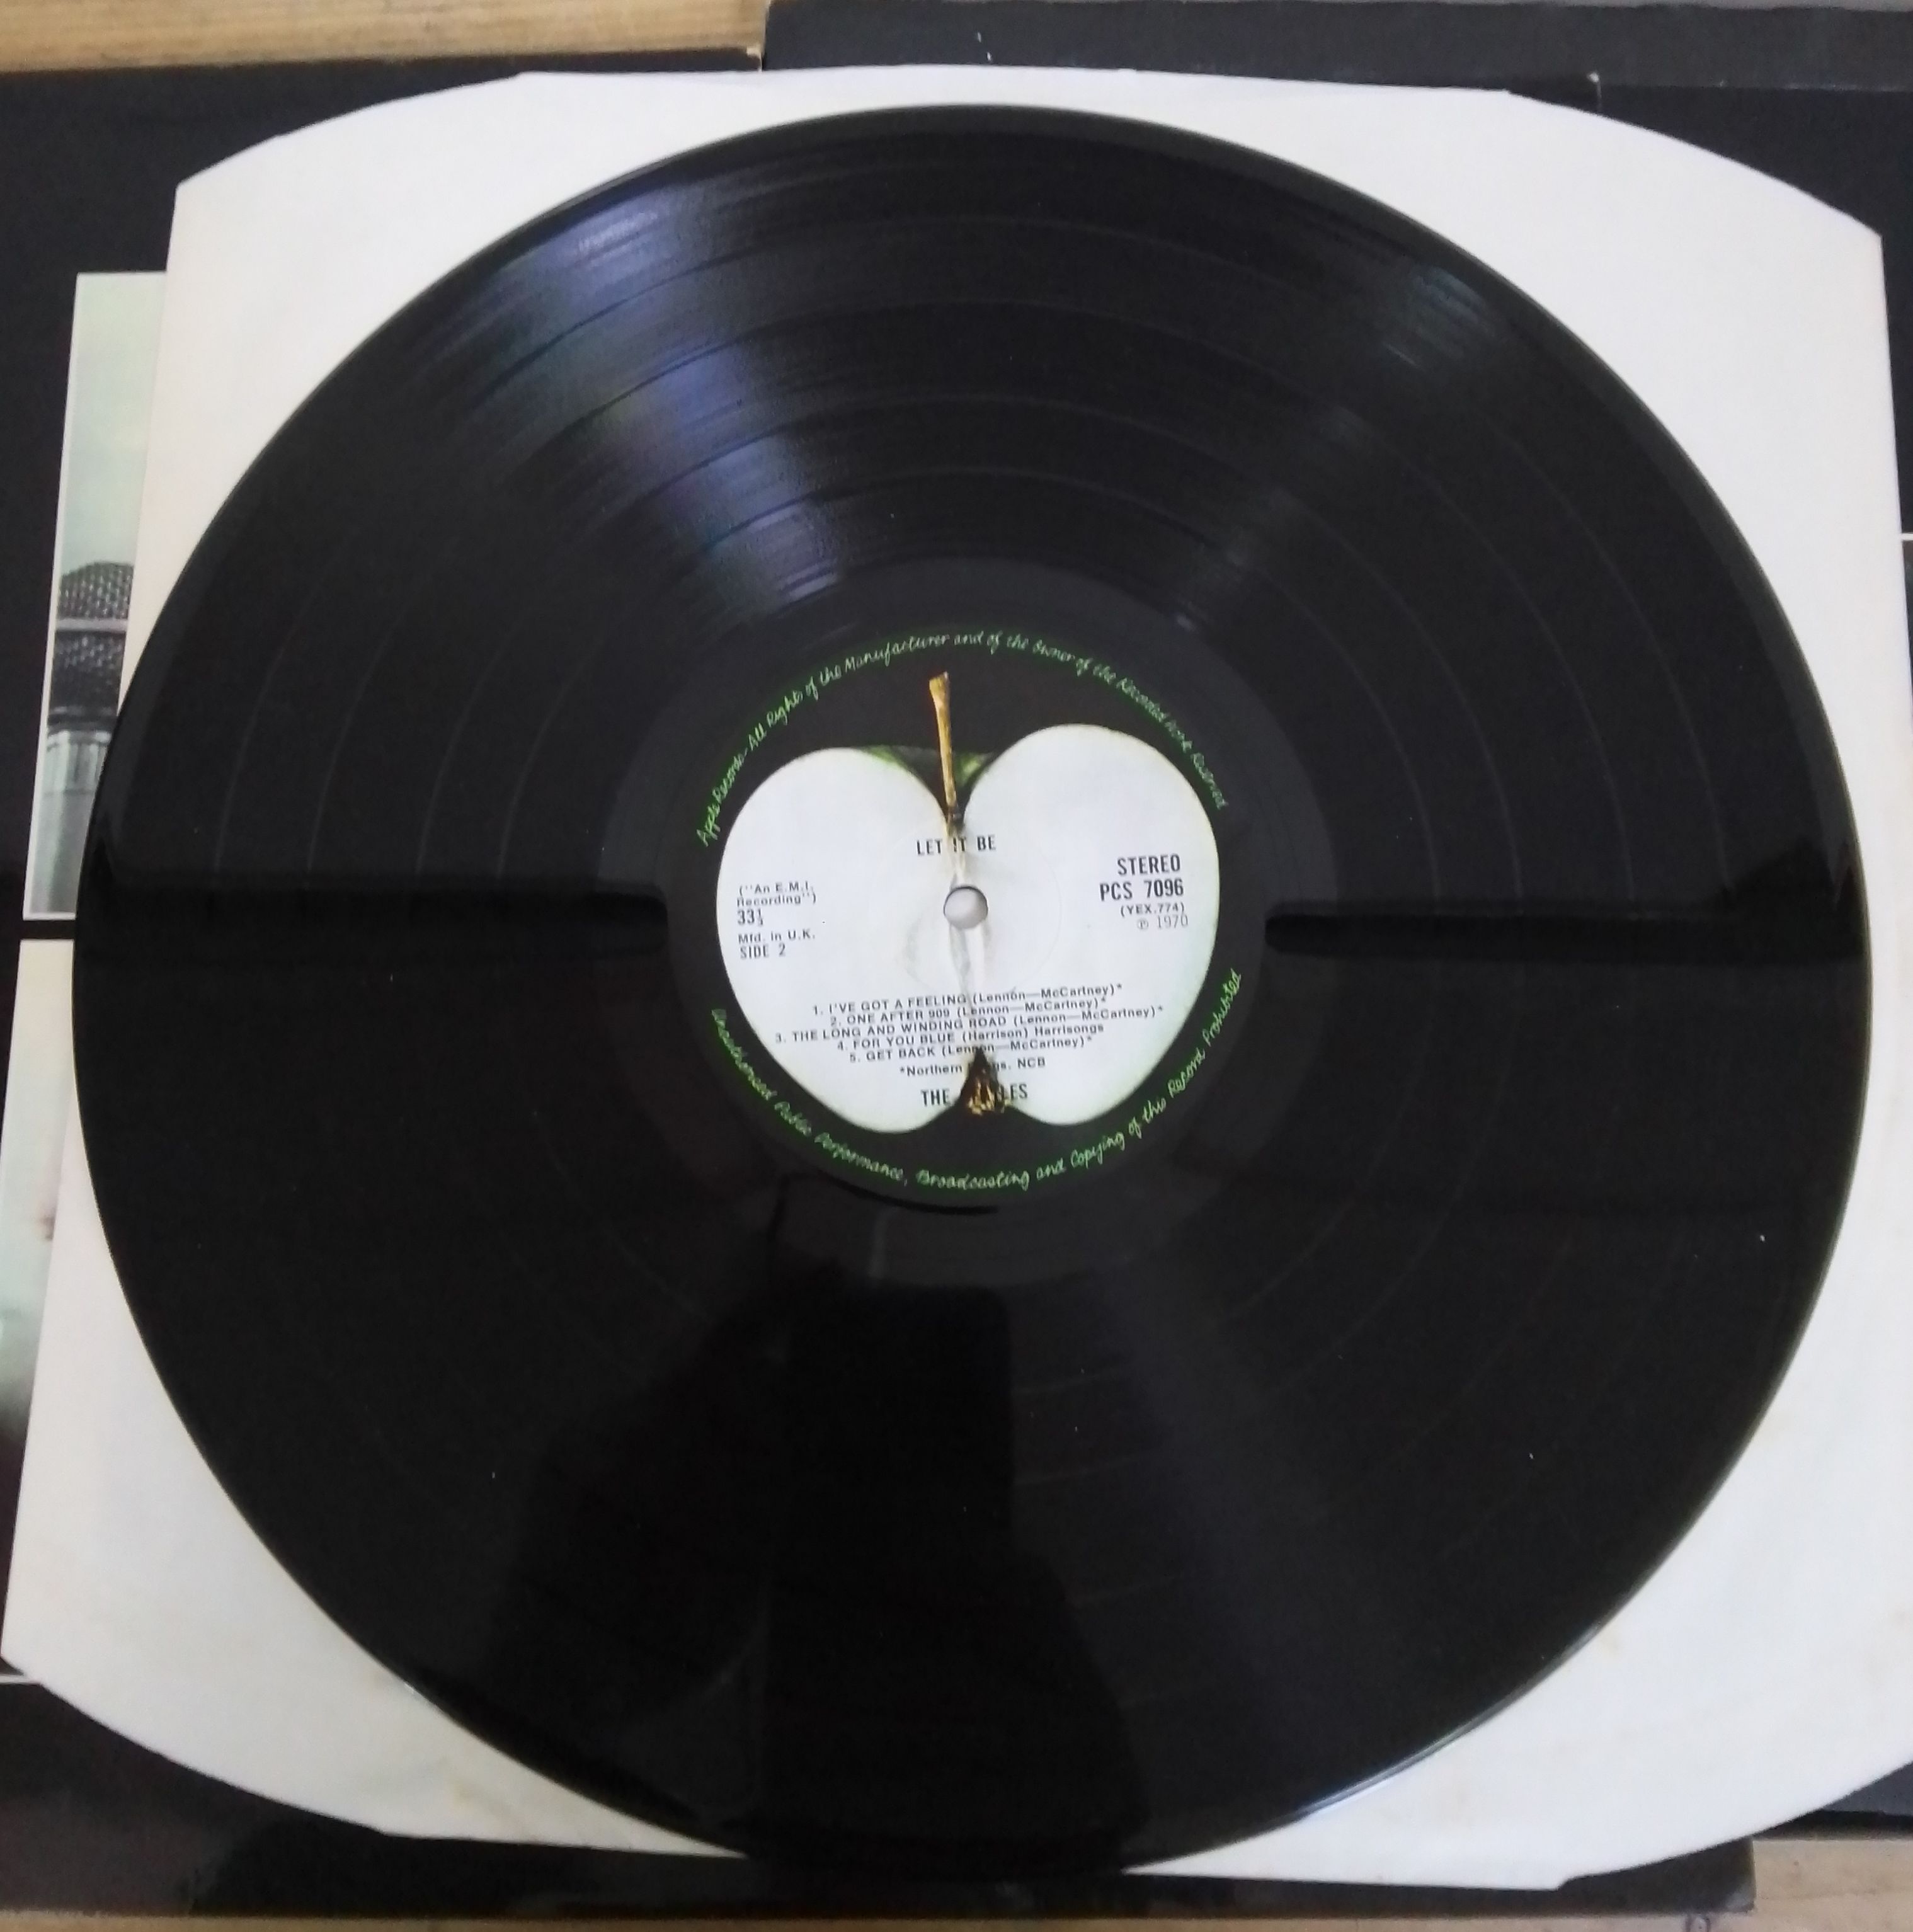 The Beatles - Let It Be, box set LP with booklet, Apple Records PXS 1 PCS 7096 - Bild 4 aus 4